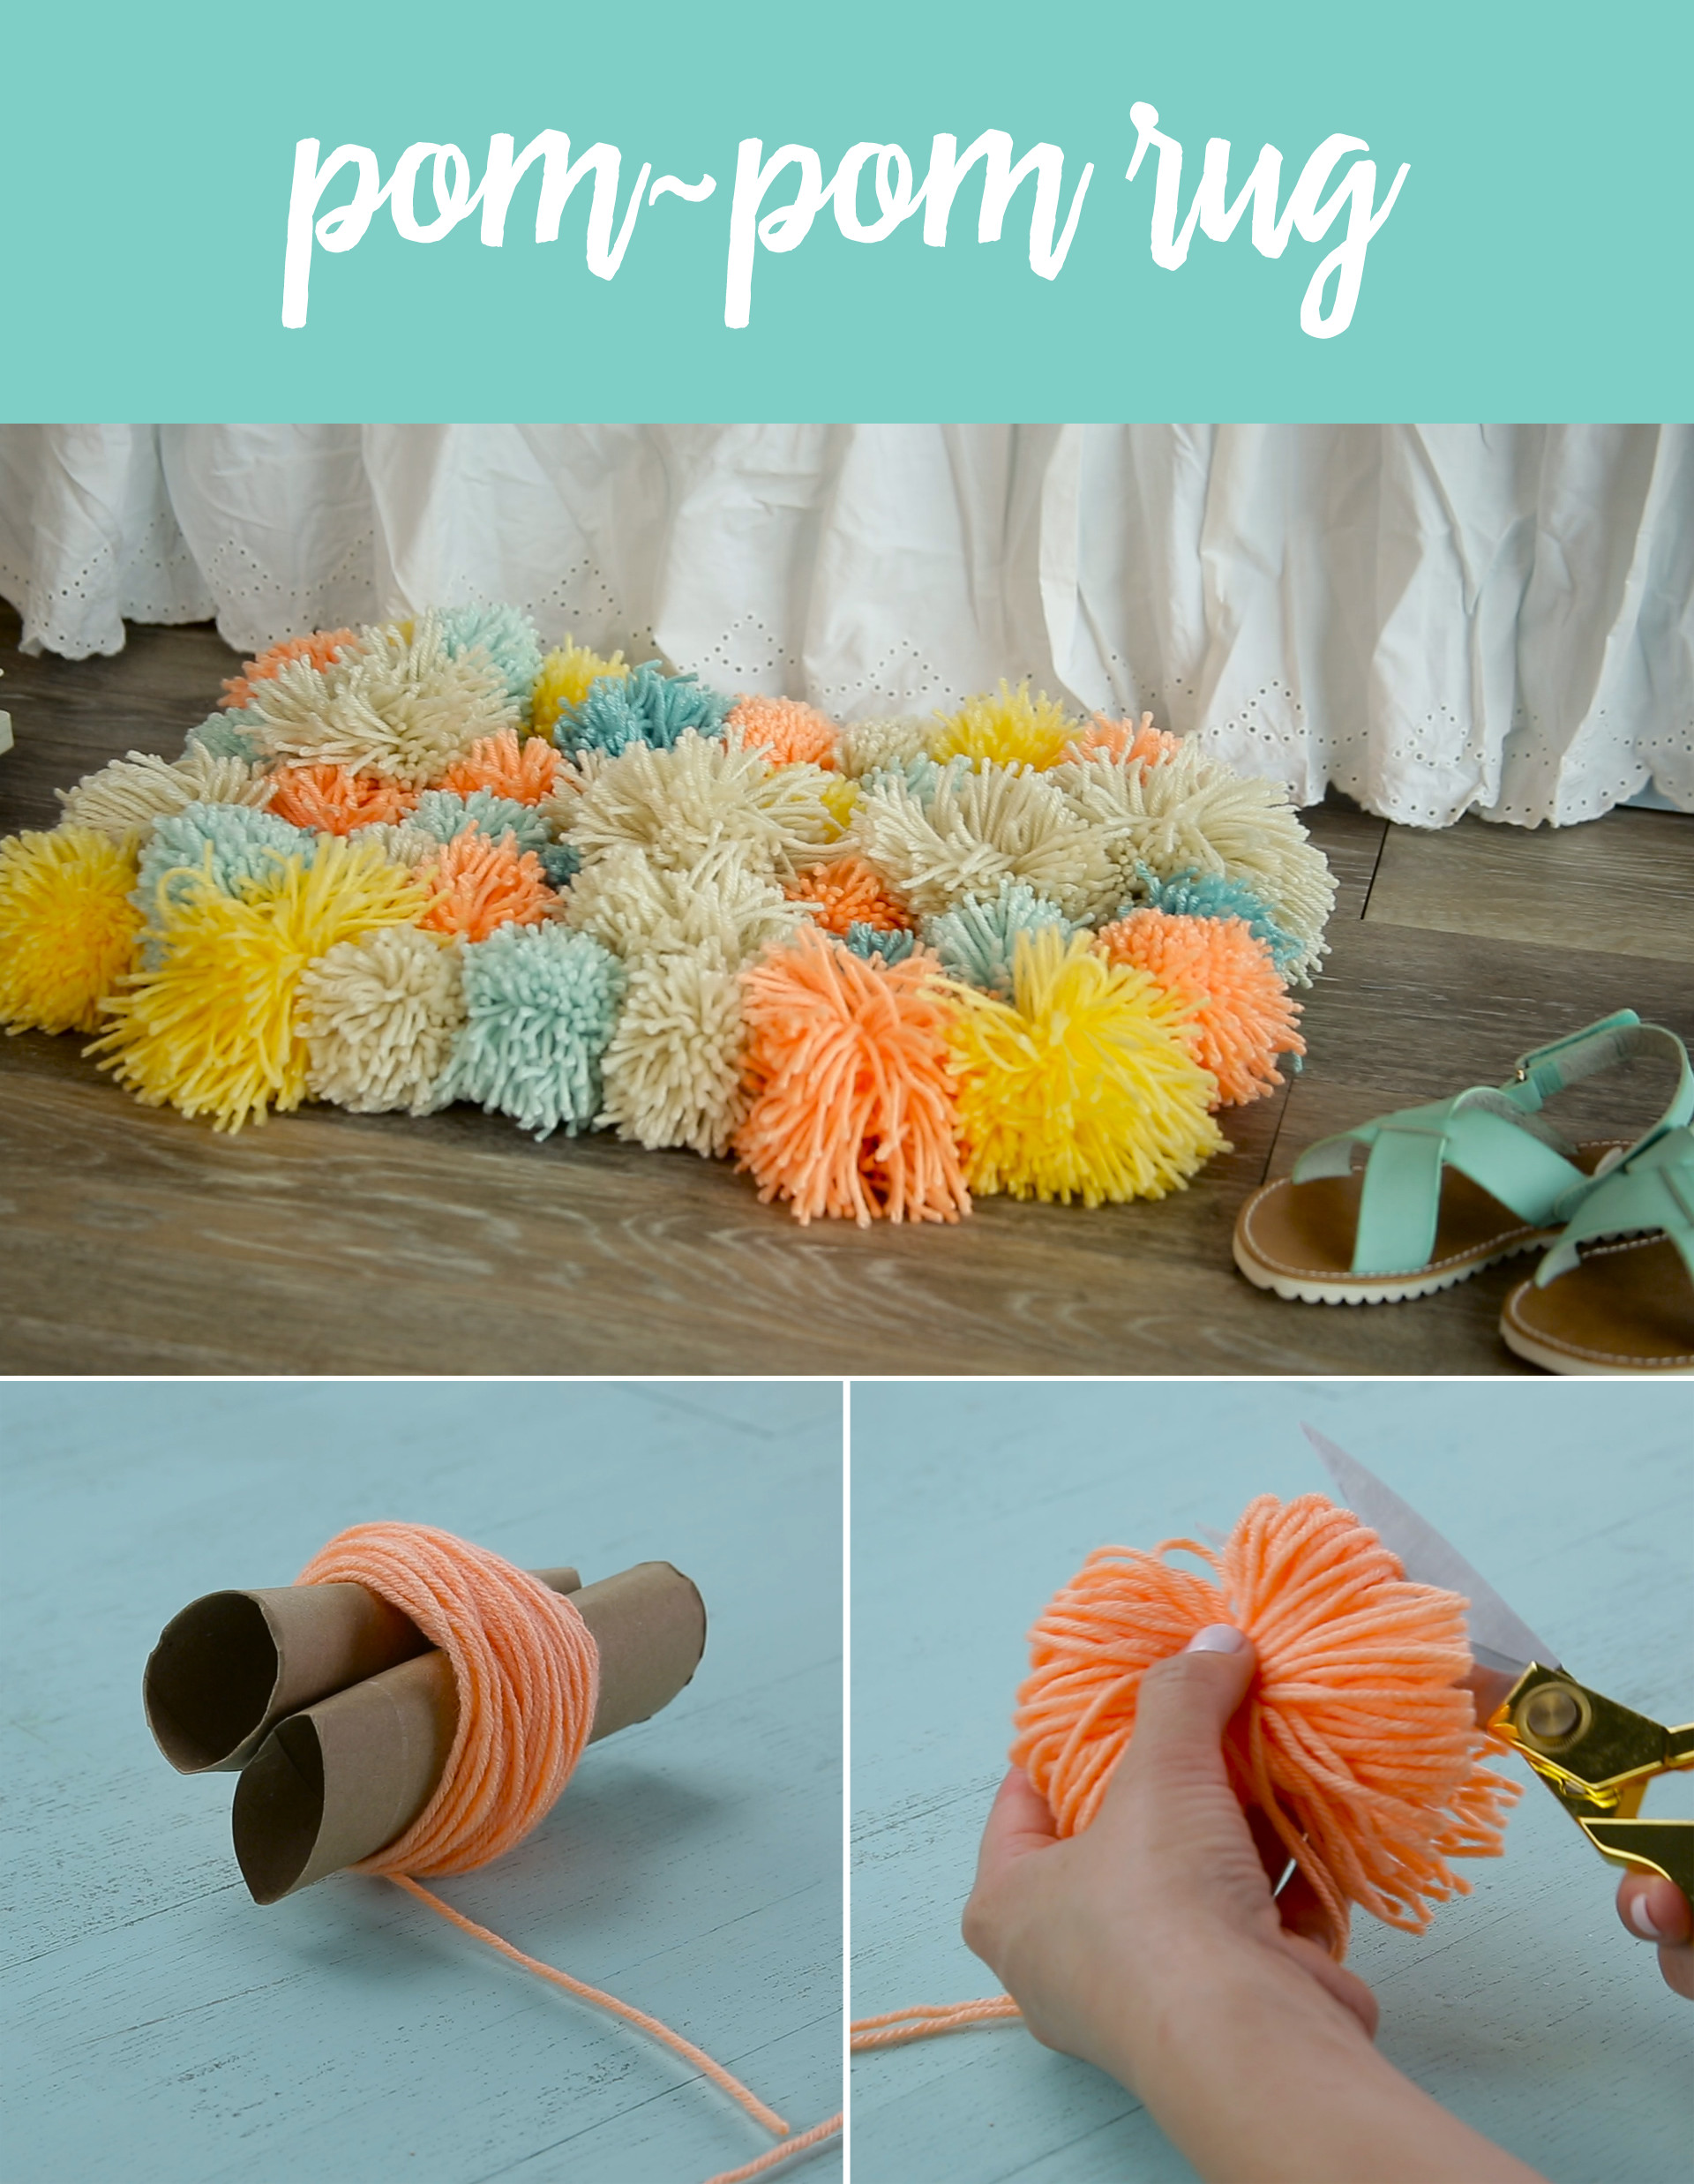 Best ideas about Pom Pom Rug DIY
. Save or Pin DIY Pom Pom Rug Now.